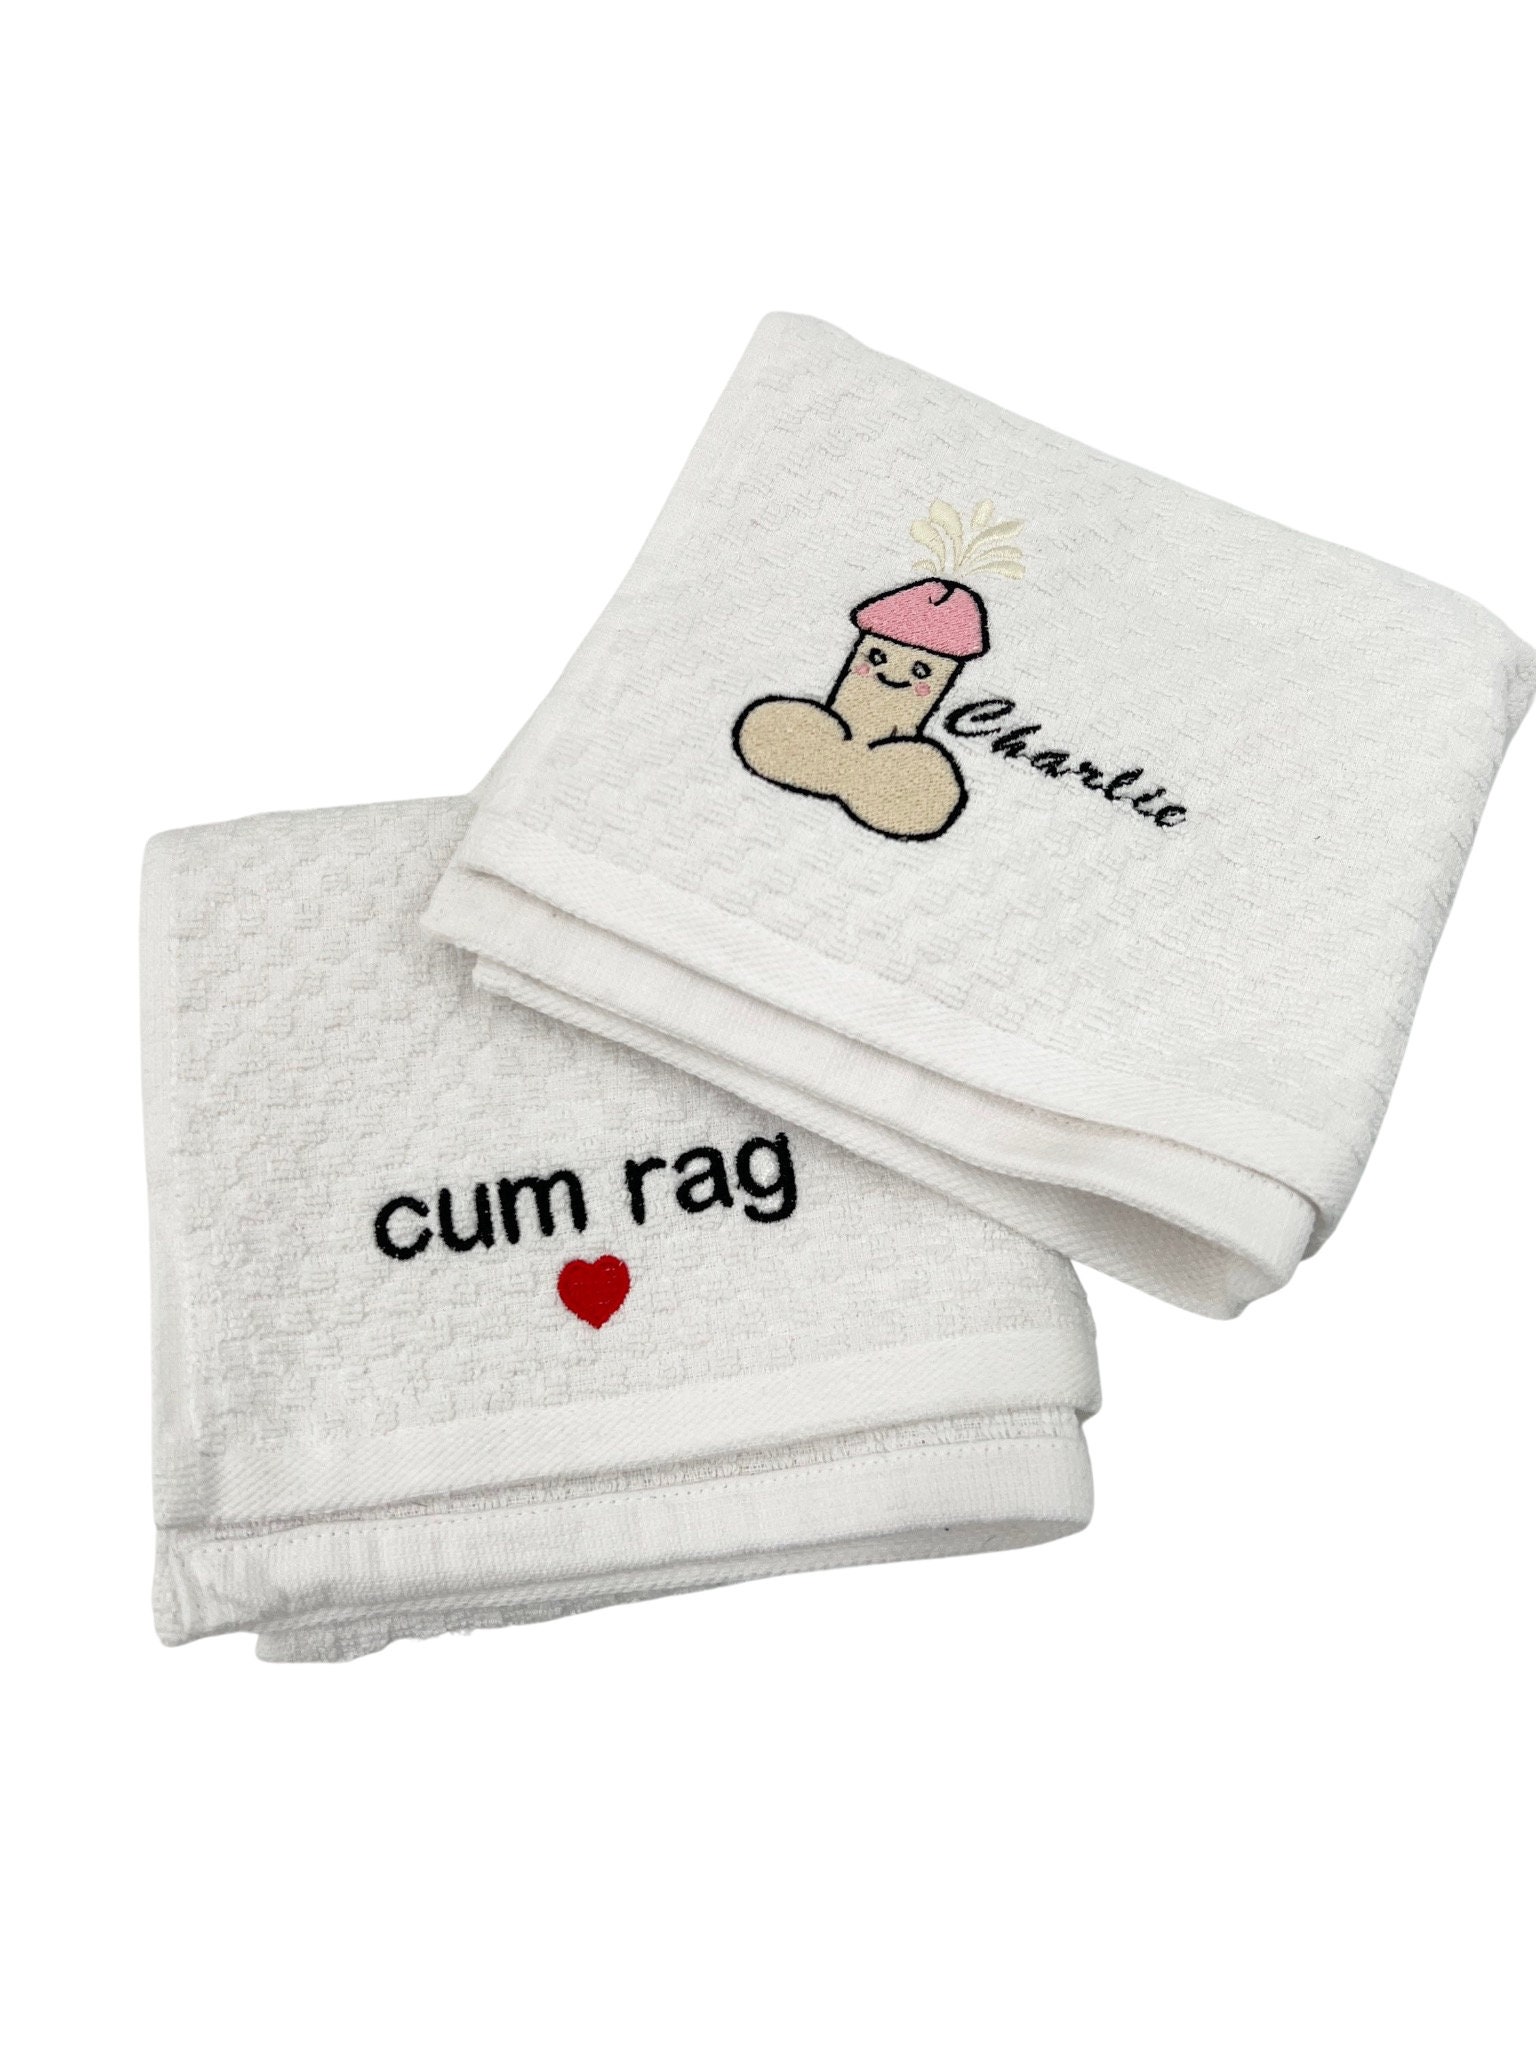 F*ck Towel/Spankerchief/Cum Rag